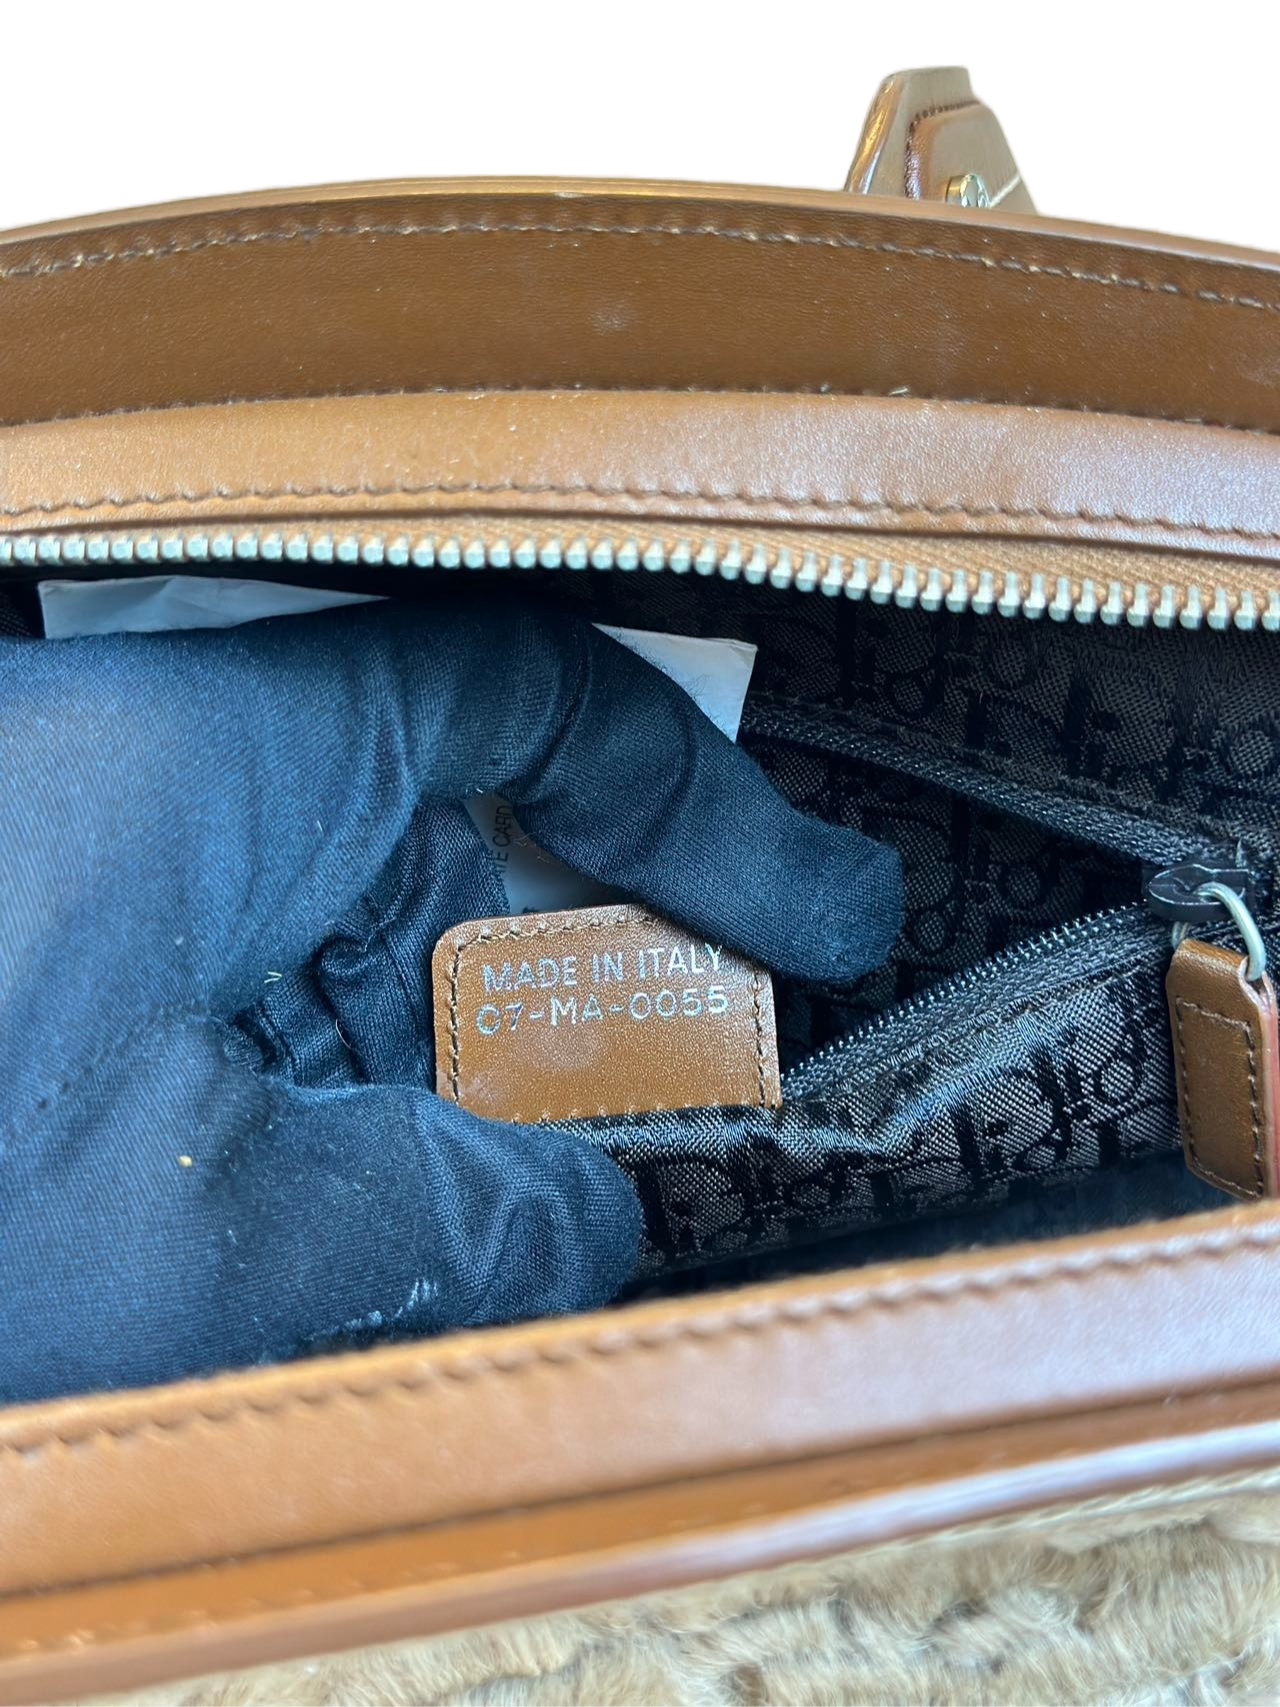 Preloved Christian Dior Vintage Satchel Handbag